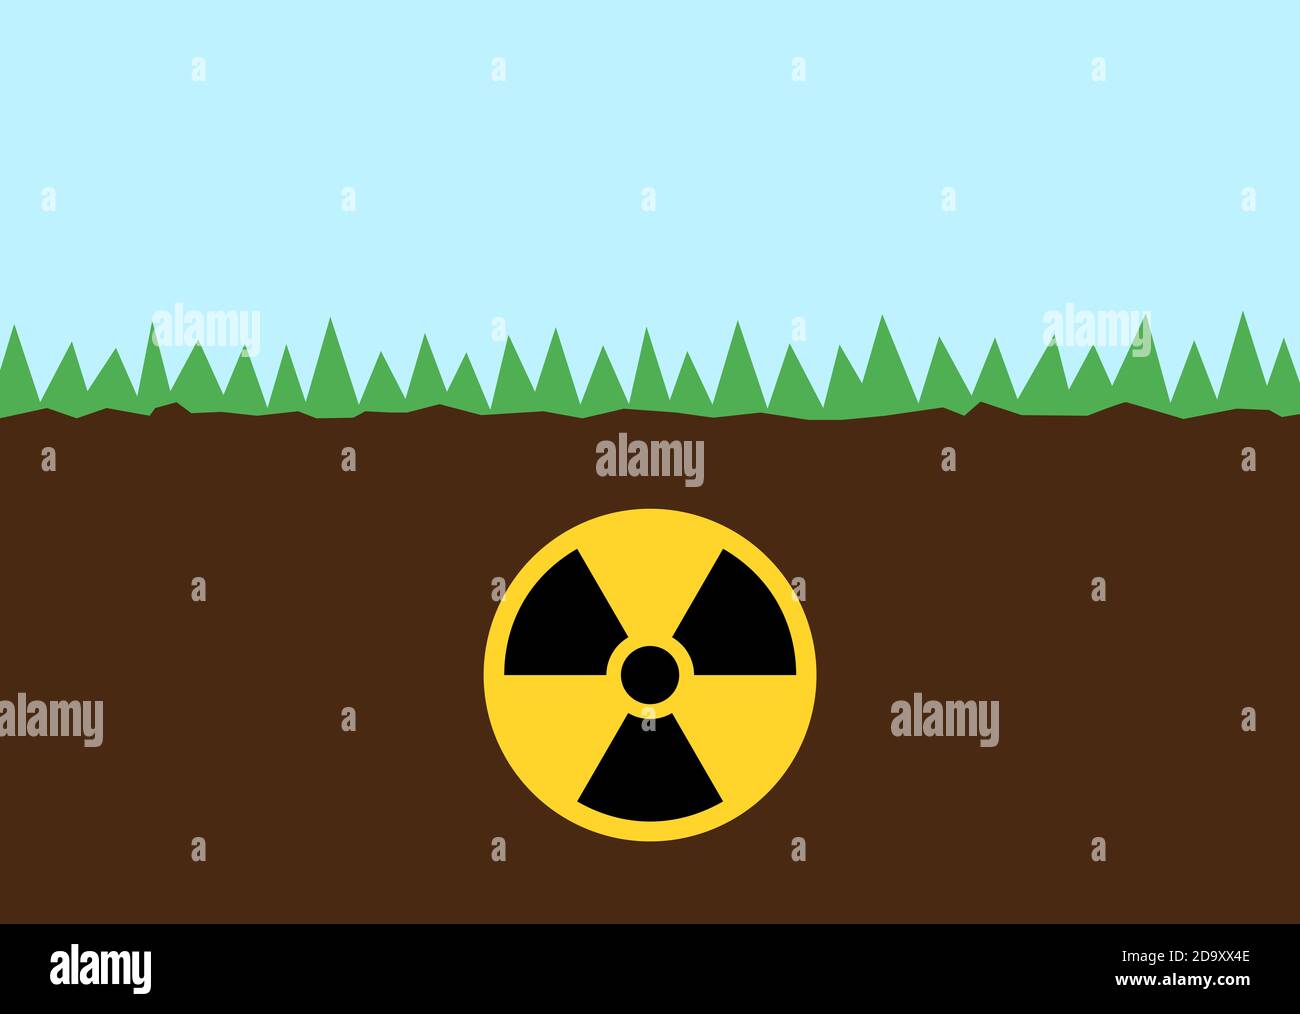 Boden und Boden sind kontaminiert, giftig und durch radioaktive Radioaktivität und Kernstrahlung verschmutzt. Vektorgrafik. Stockfoto